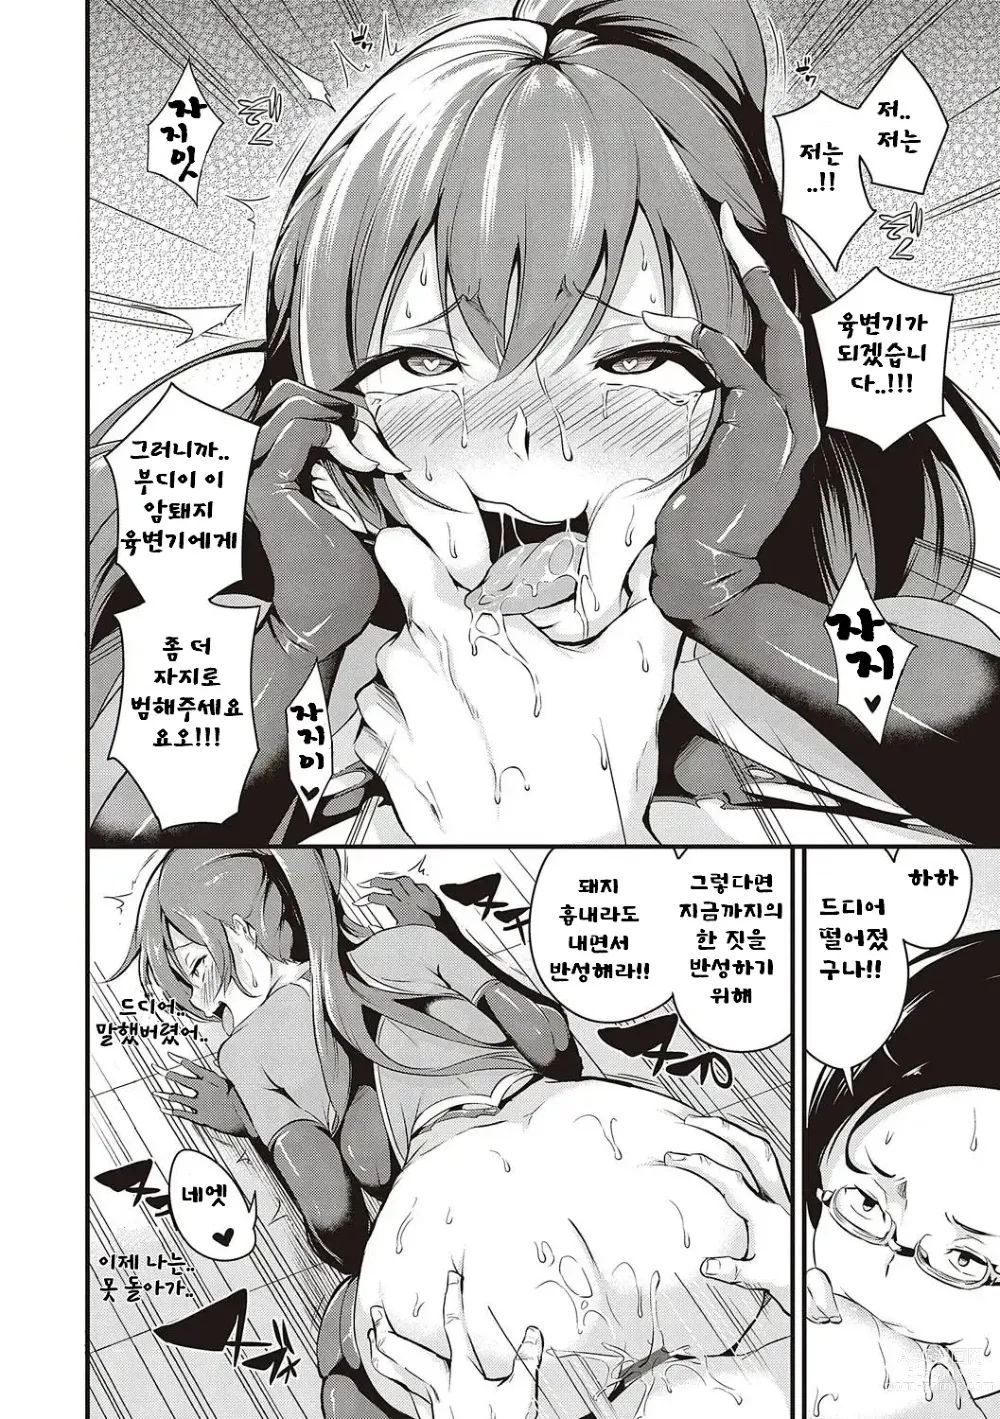 Page 247 of manga Mesutoiro